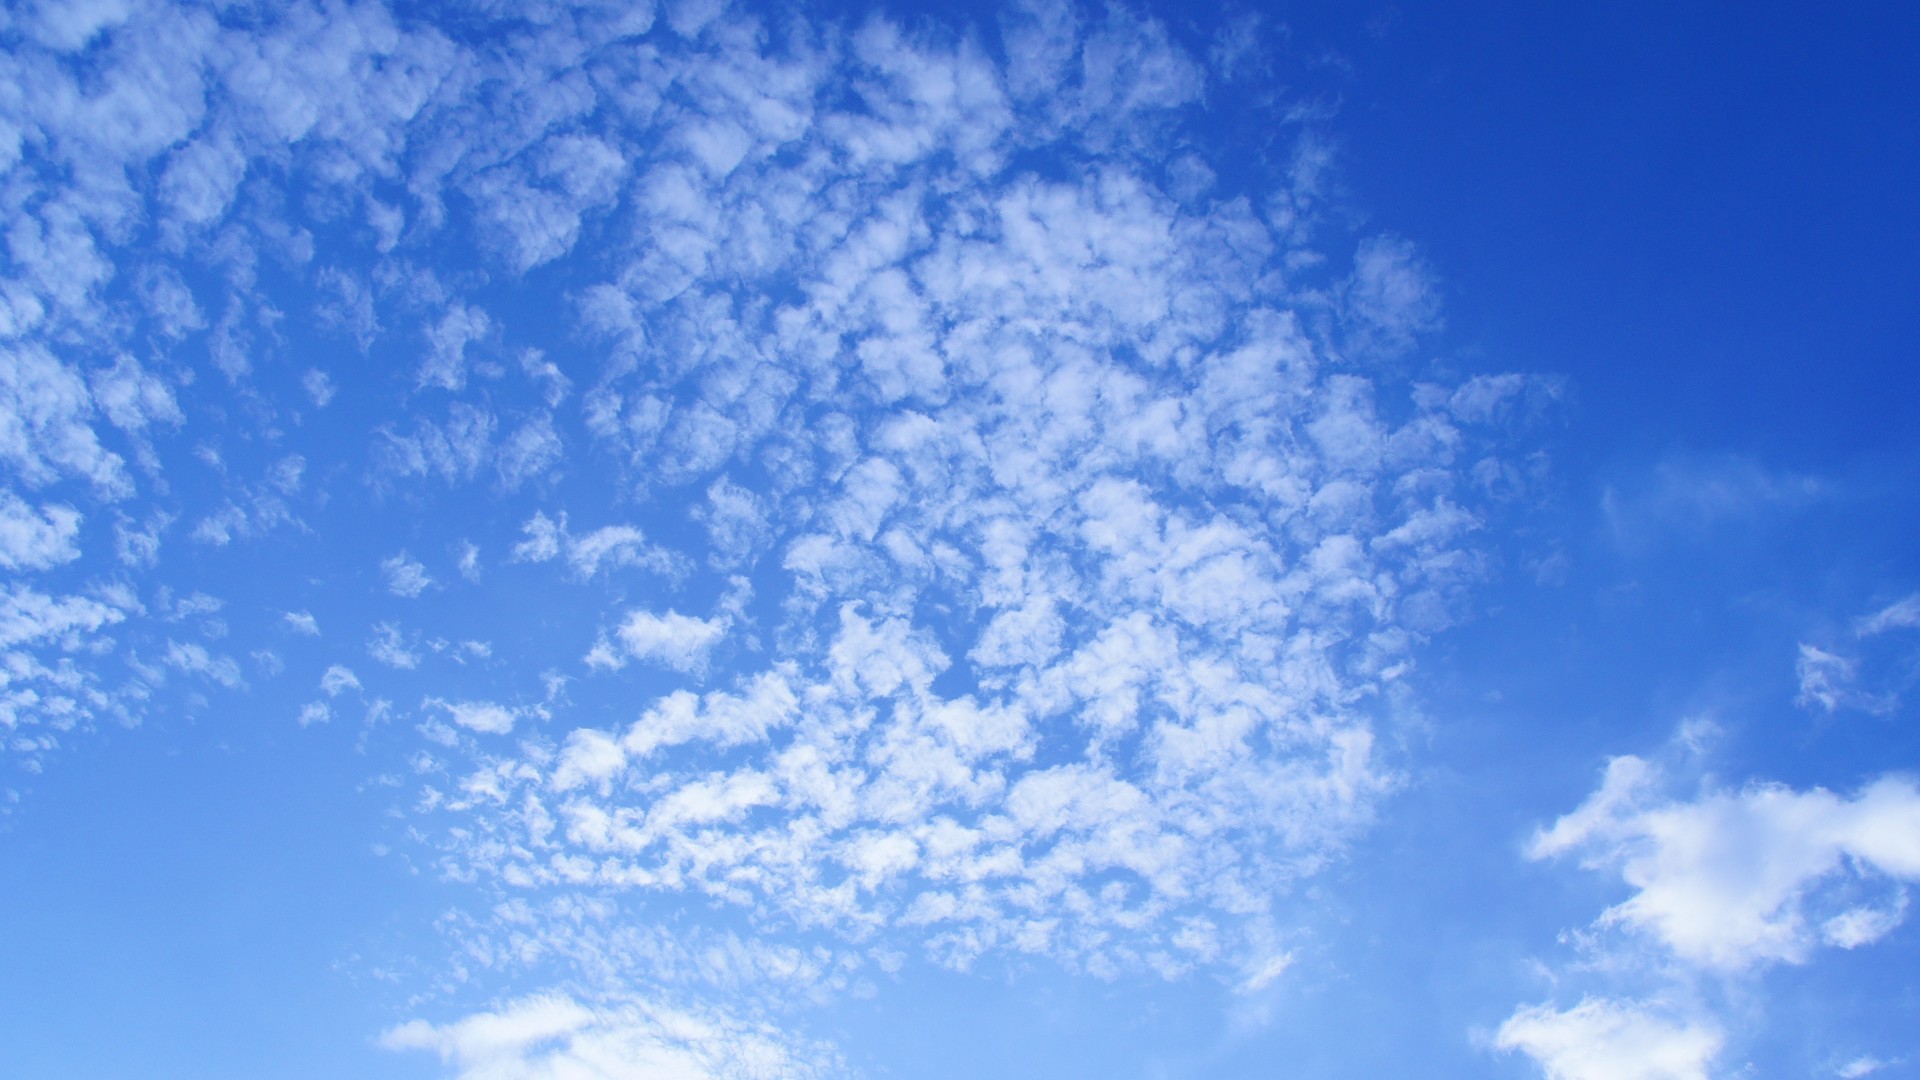 美丽的蓝天白云如鱼鳞一样唯美风景图片壁纸